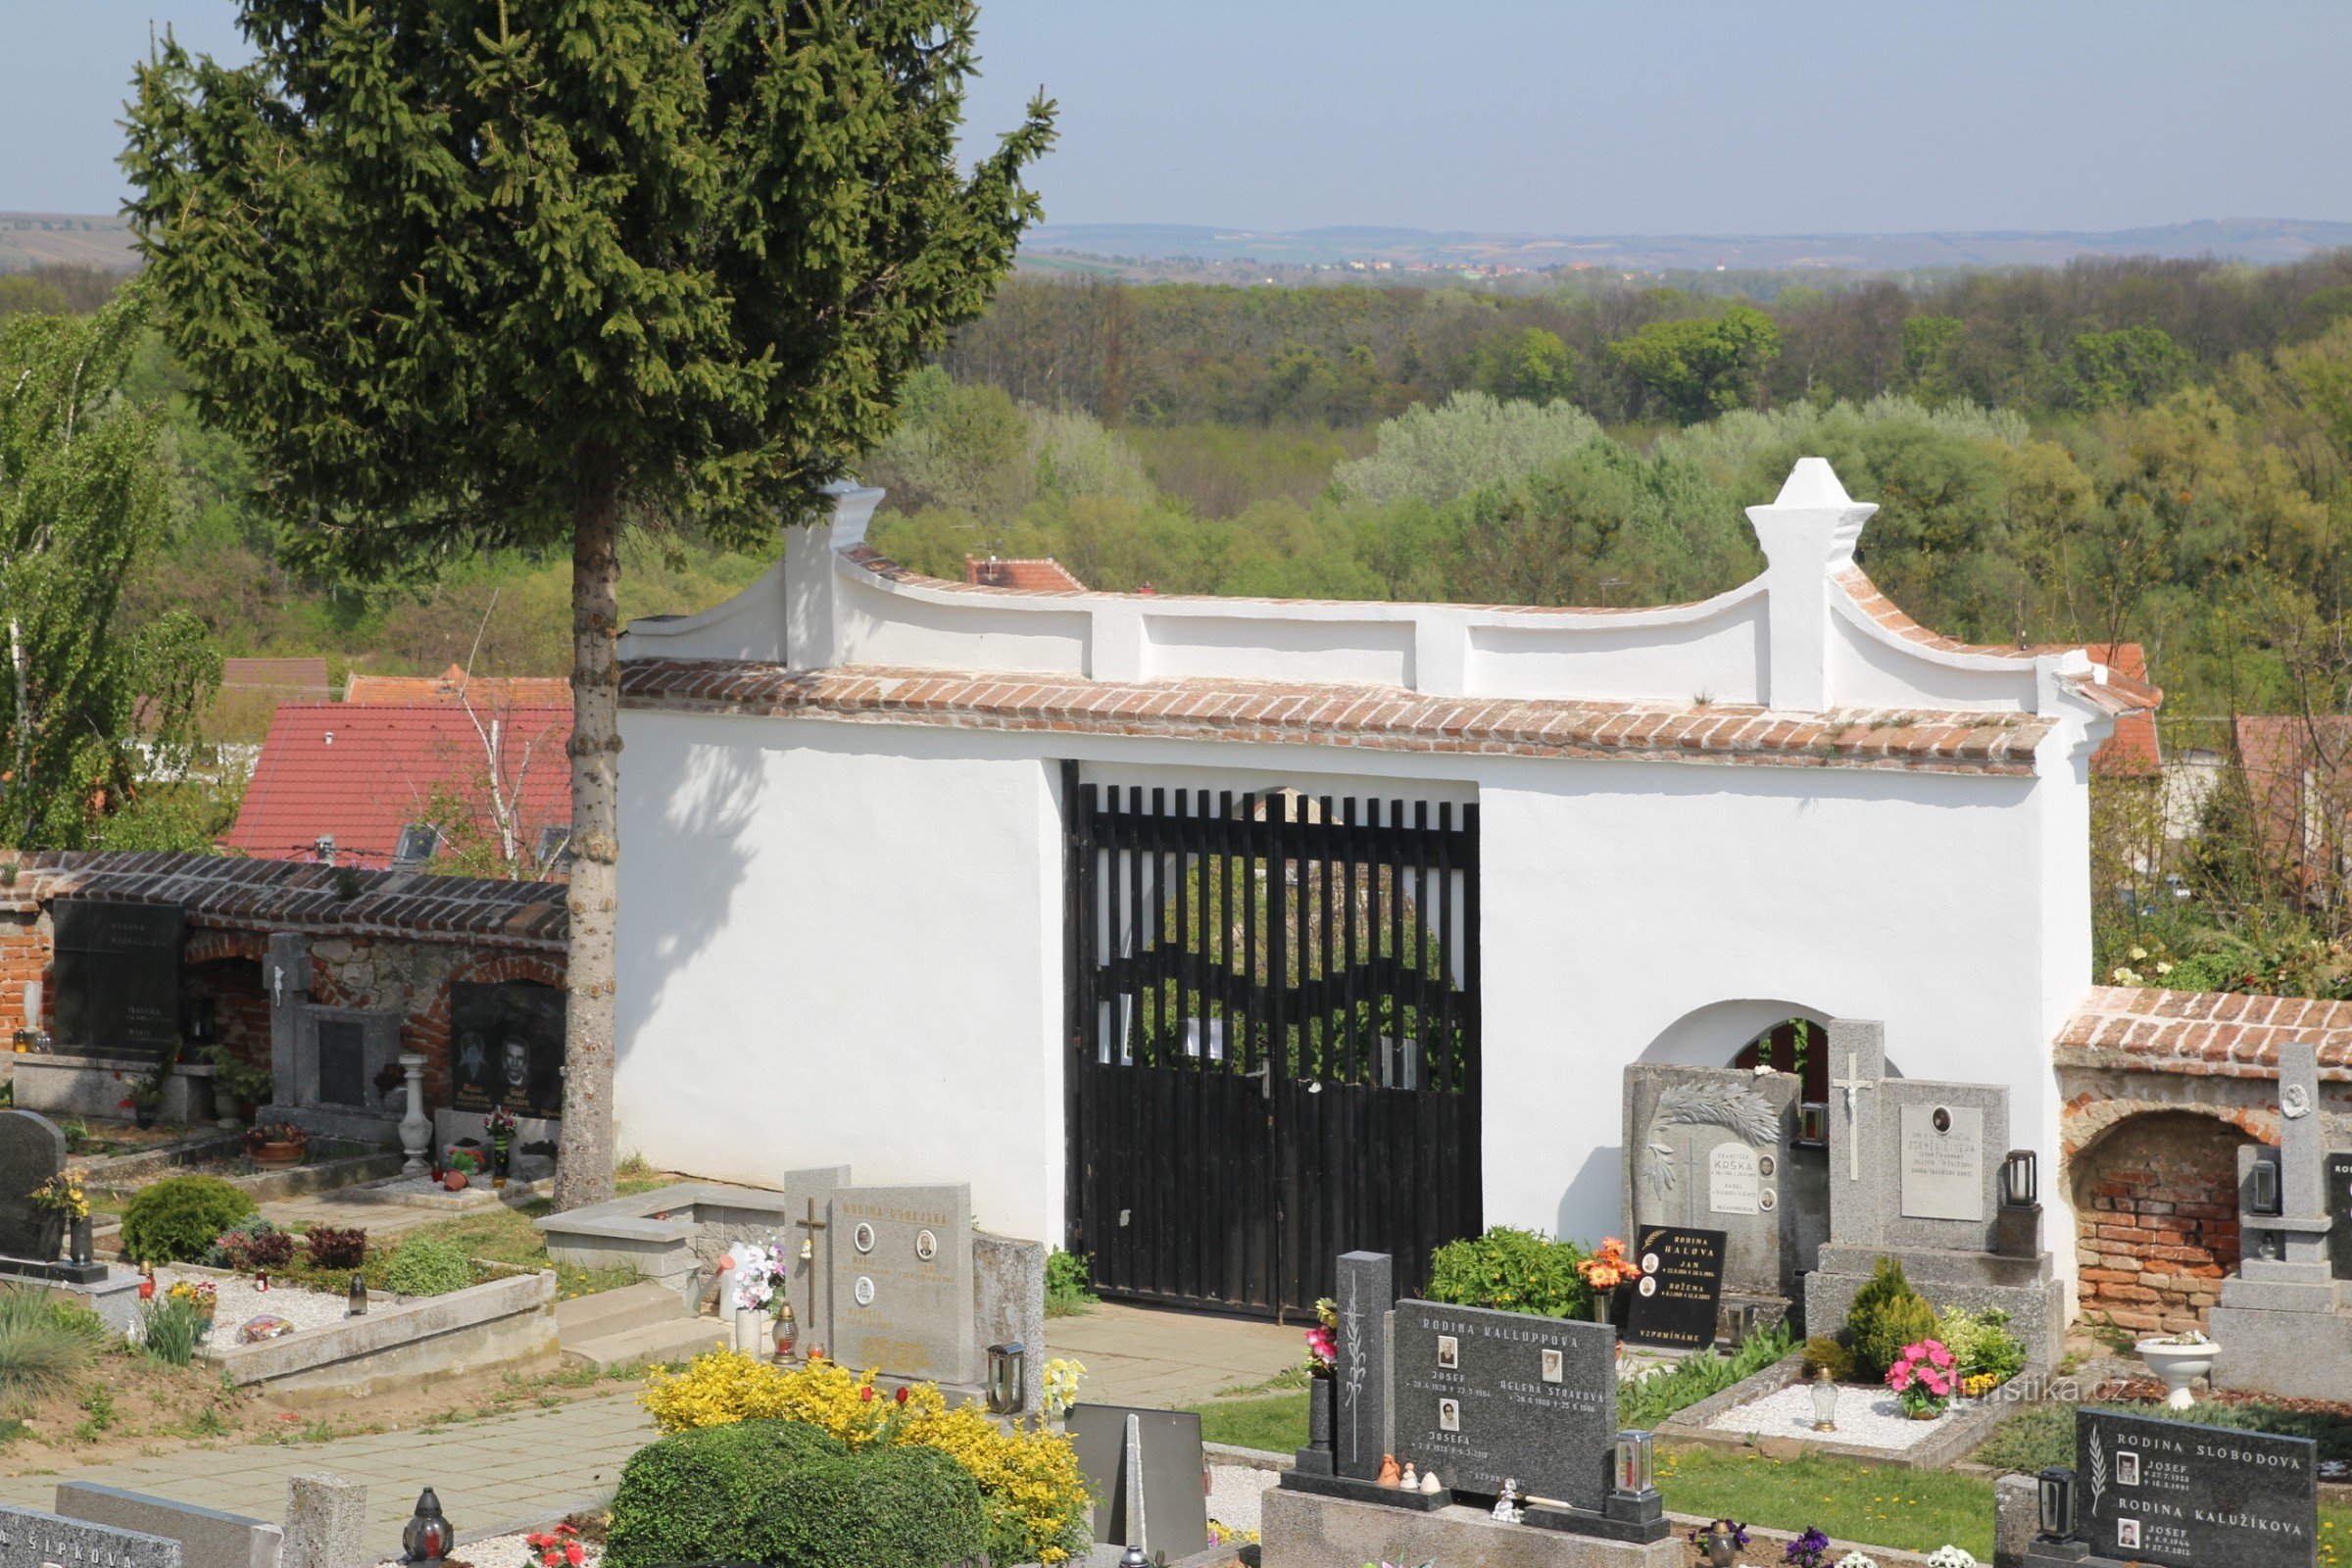 Toegangspoort en kerkhofmuur vanuit het binnenste gedeelte